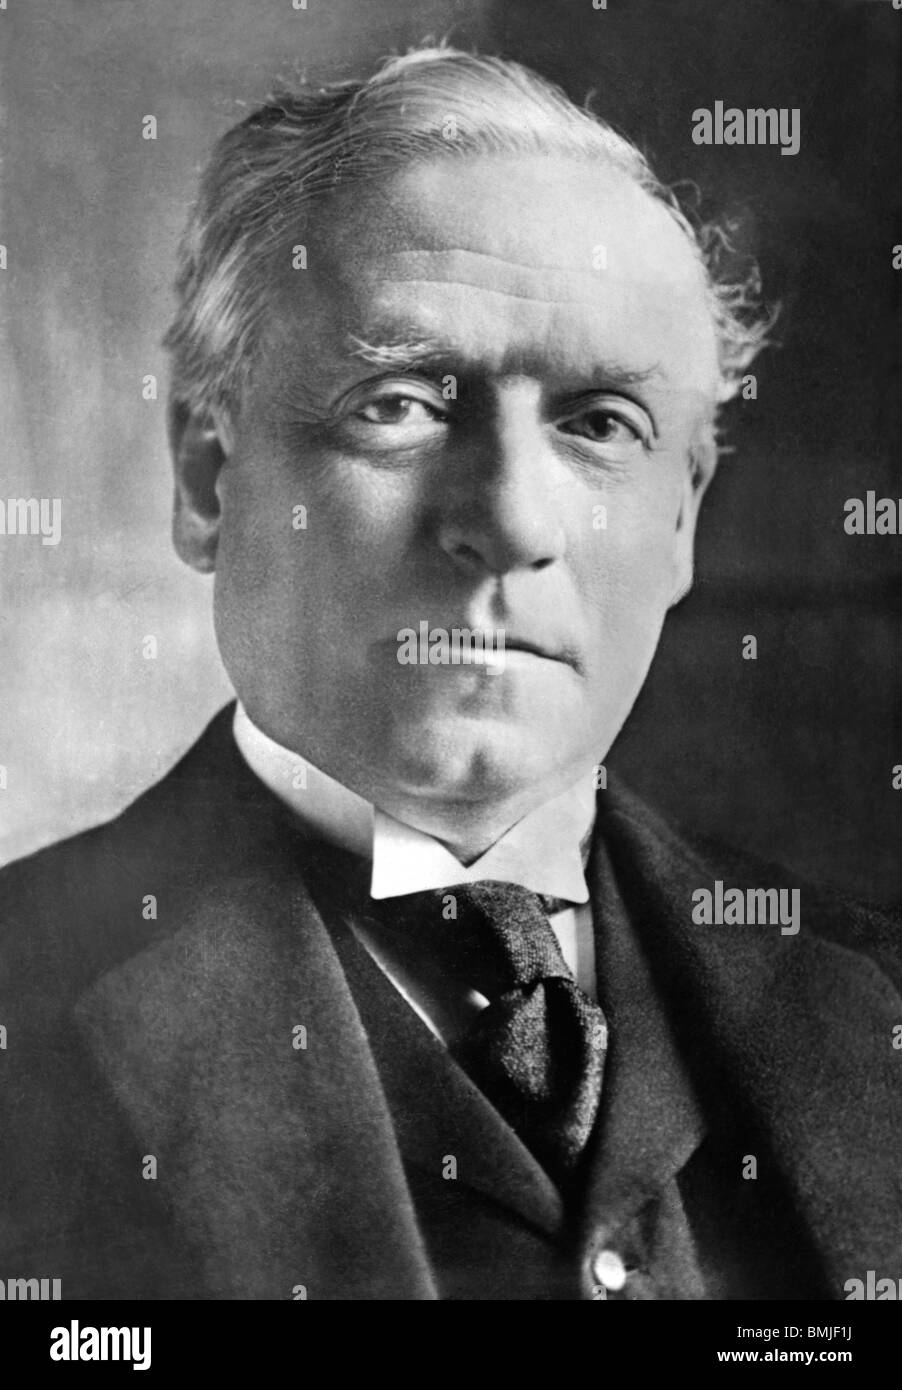 Sans date photo portrait d'Herbert Henry Asquith (1852 - 1928) - Parti libéral Premier Ministre du Royaume-Uni de 1908 à 1916. Banque D'Images